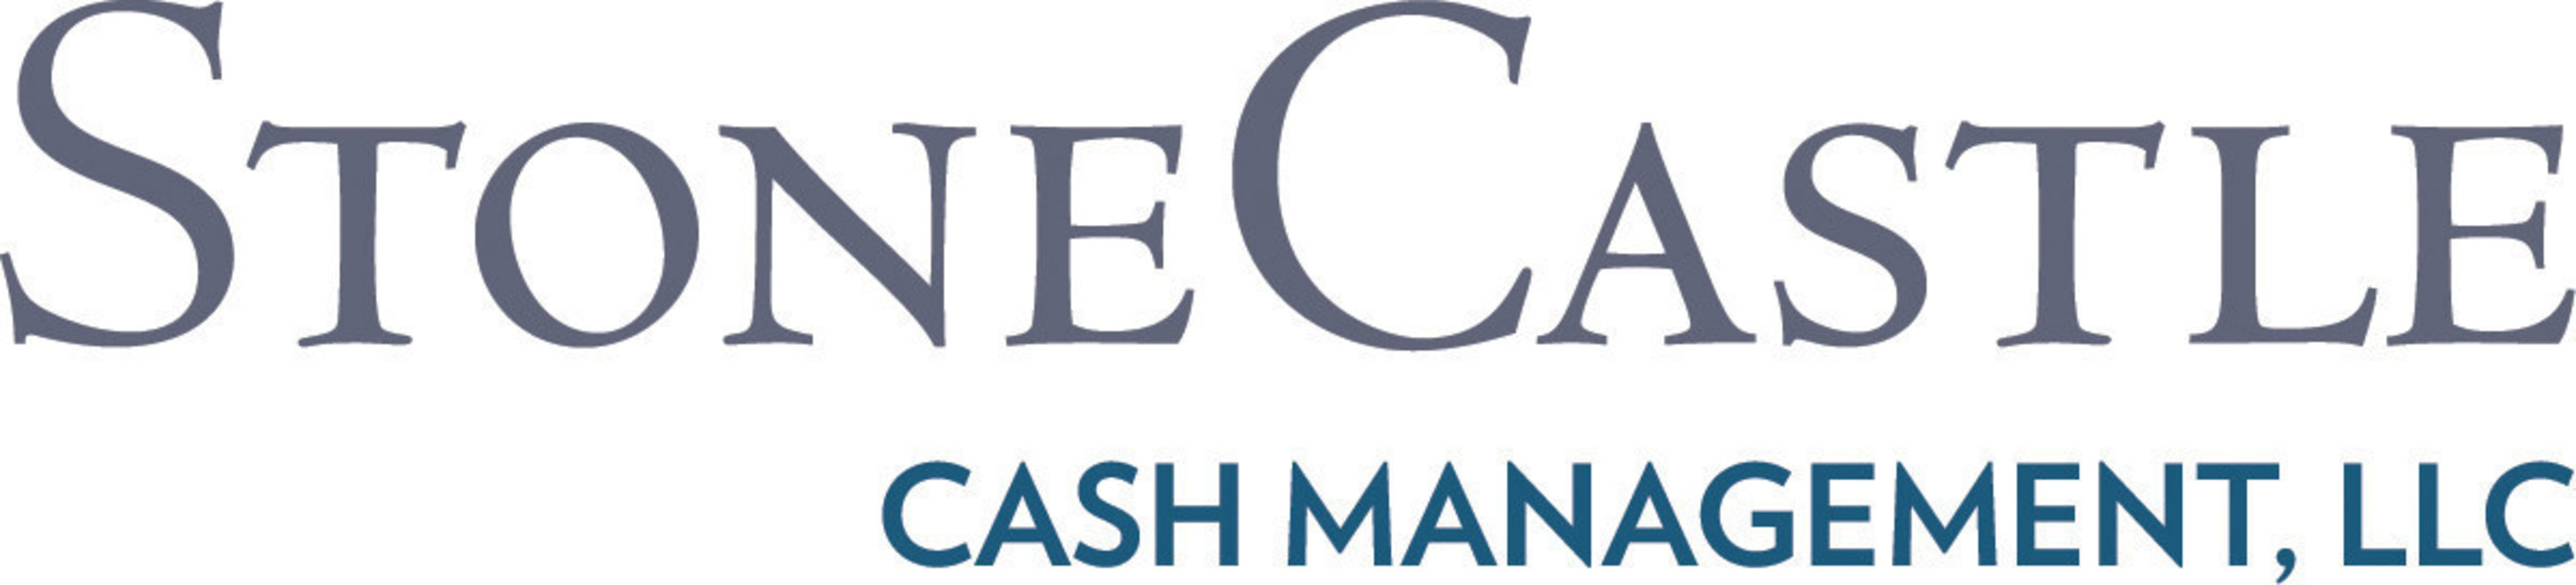 StoneCastle Cash Management, LLC